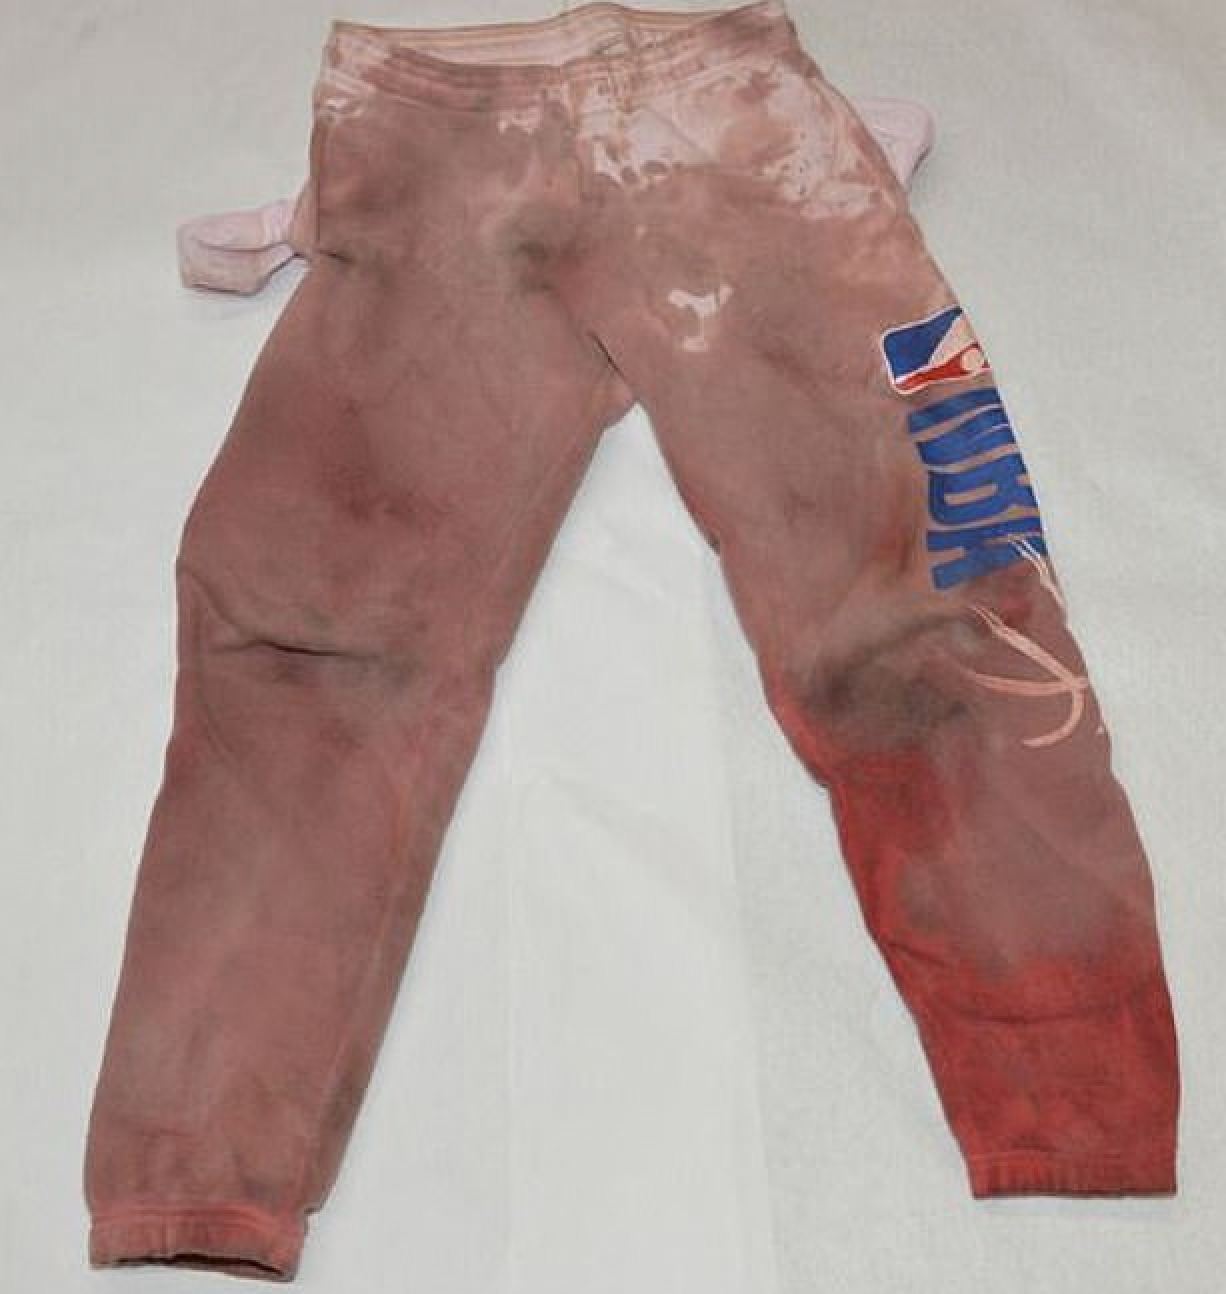 Los pantalones de chándal de Courtney Clenney estaban cubiertos de sangre tras el presunto apuñalamiento mortal